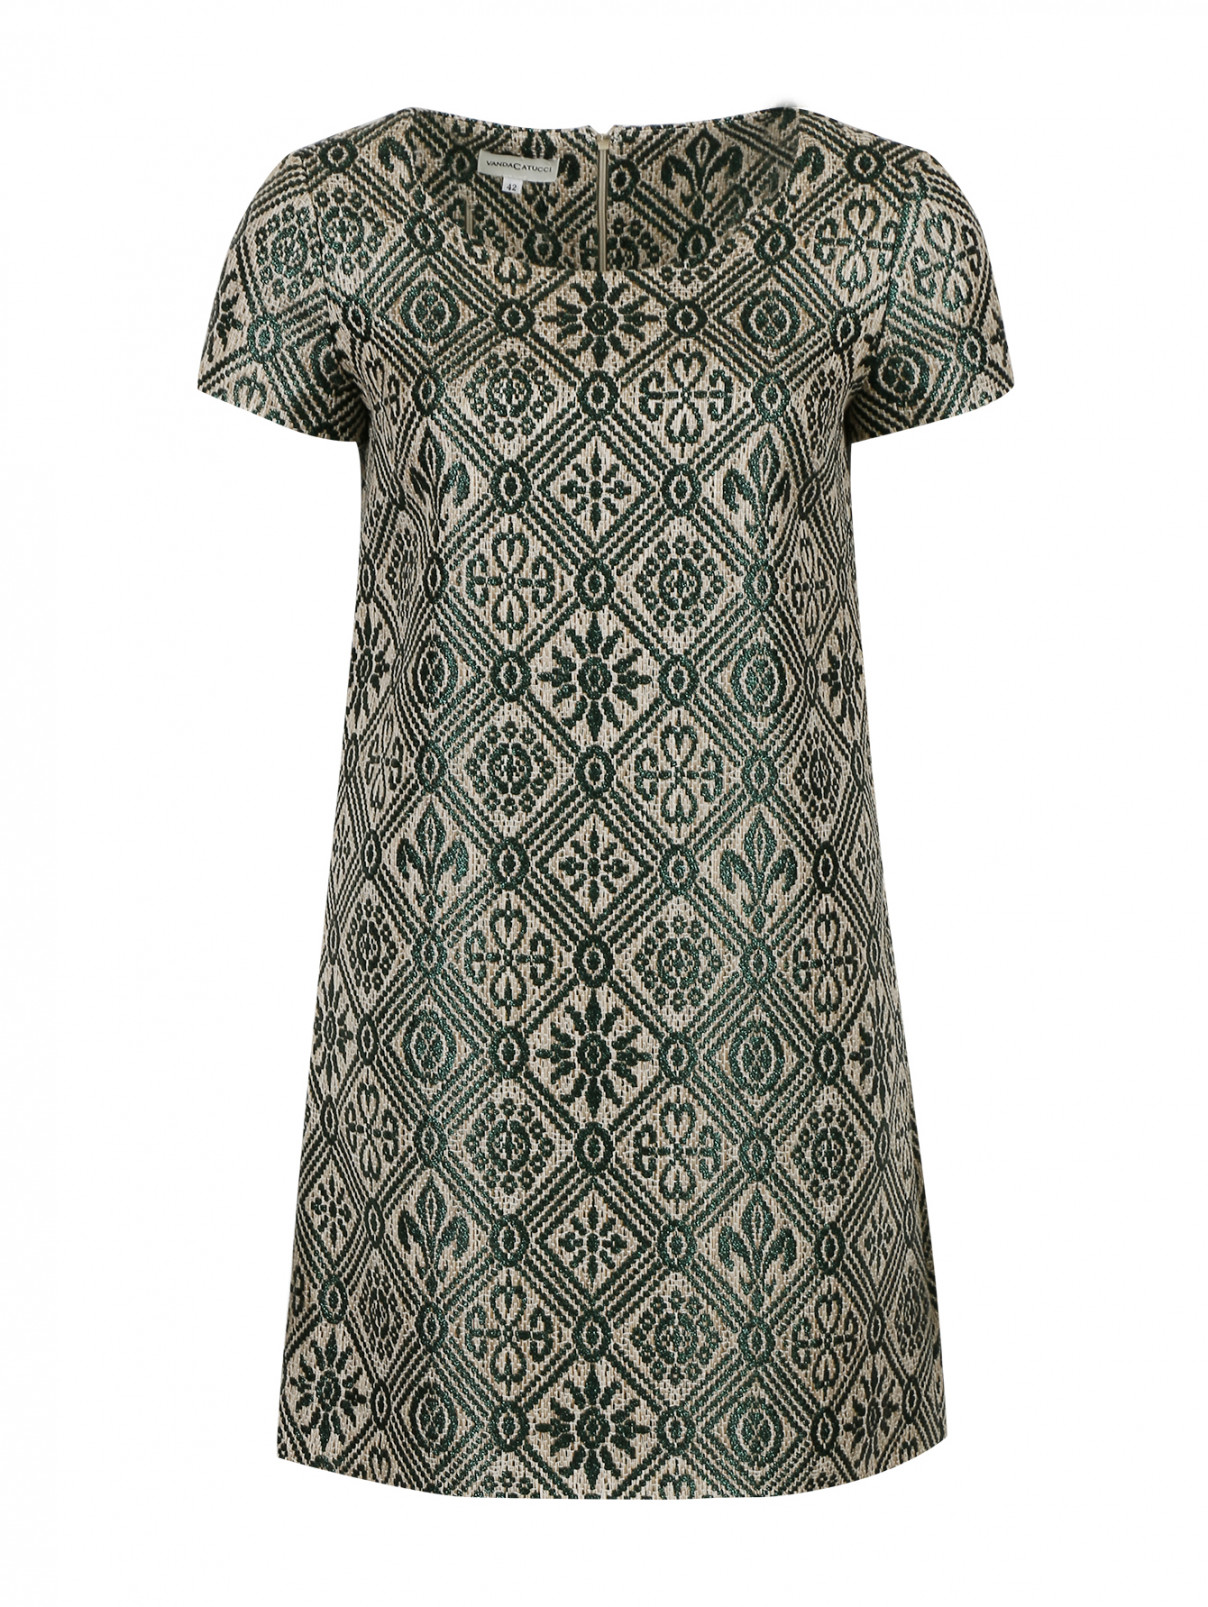 Мини-платье с принтом Vanda Catucci  –  Общий вид  – Цвет:  Зеленый